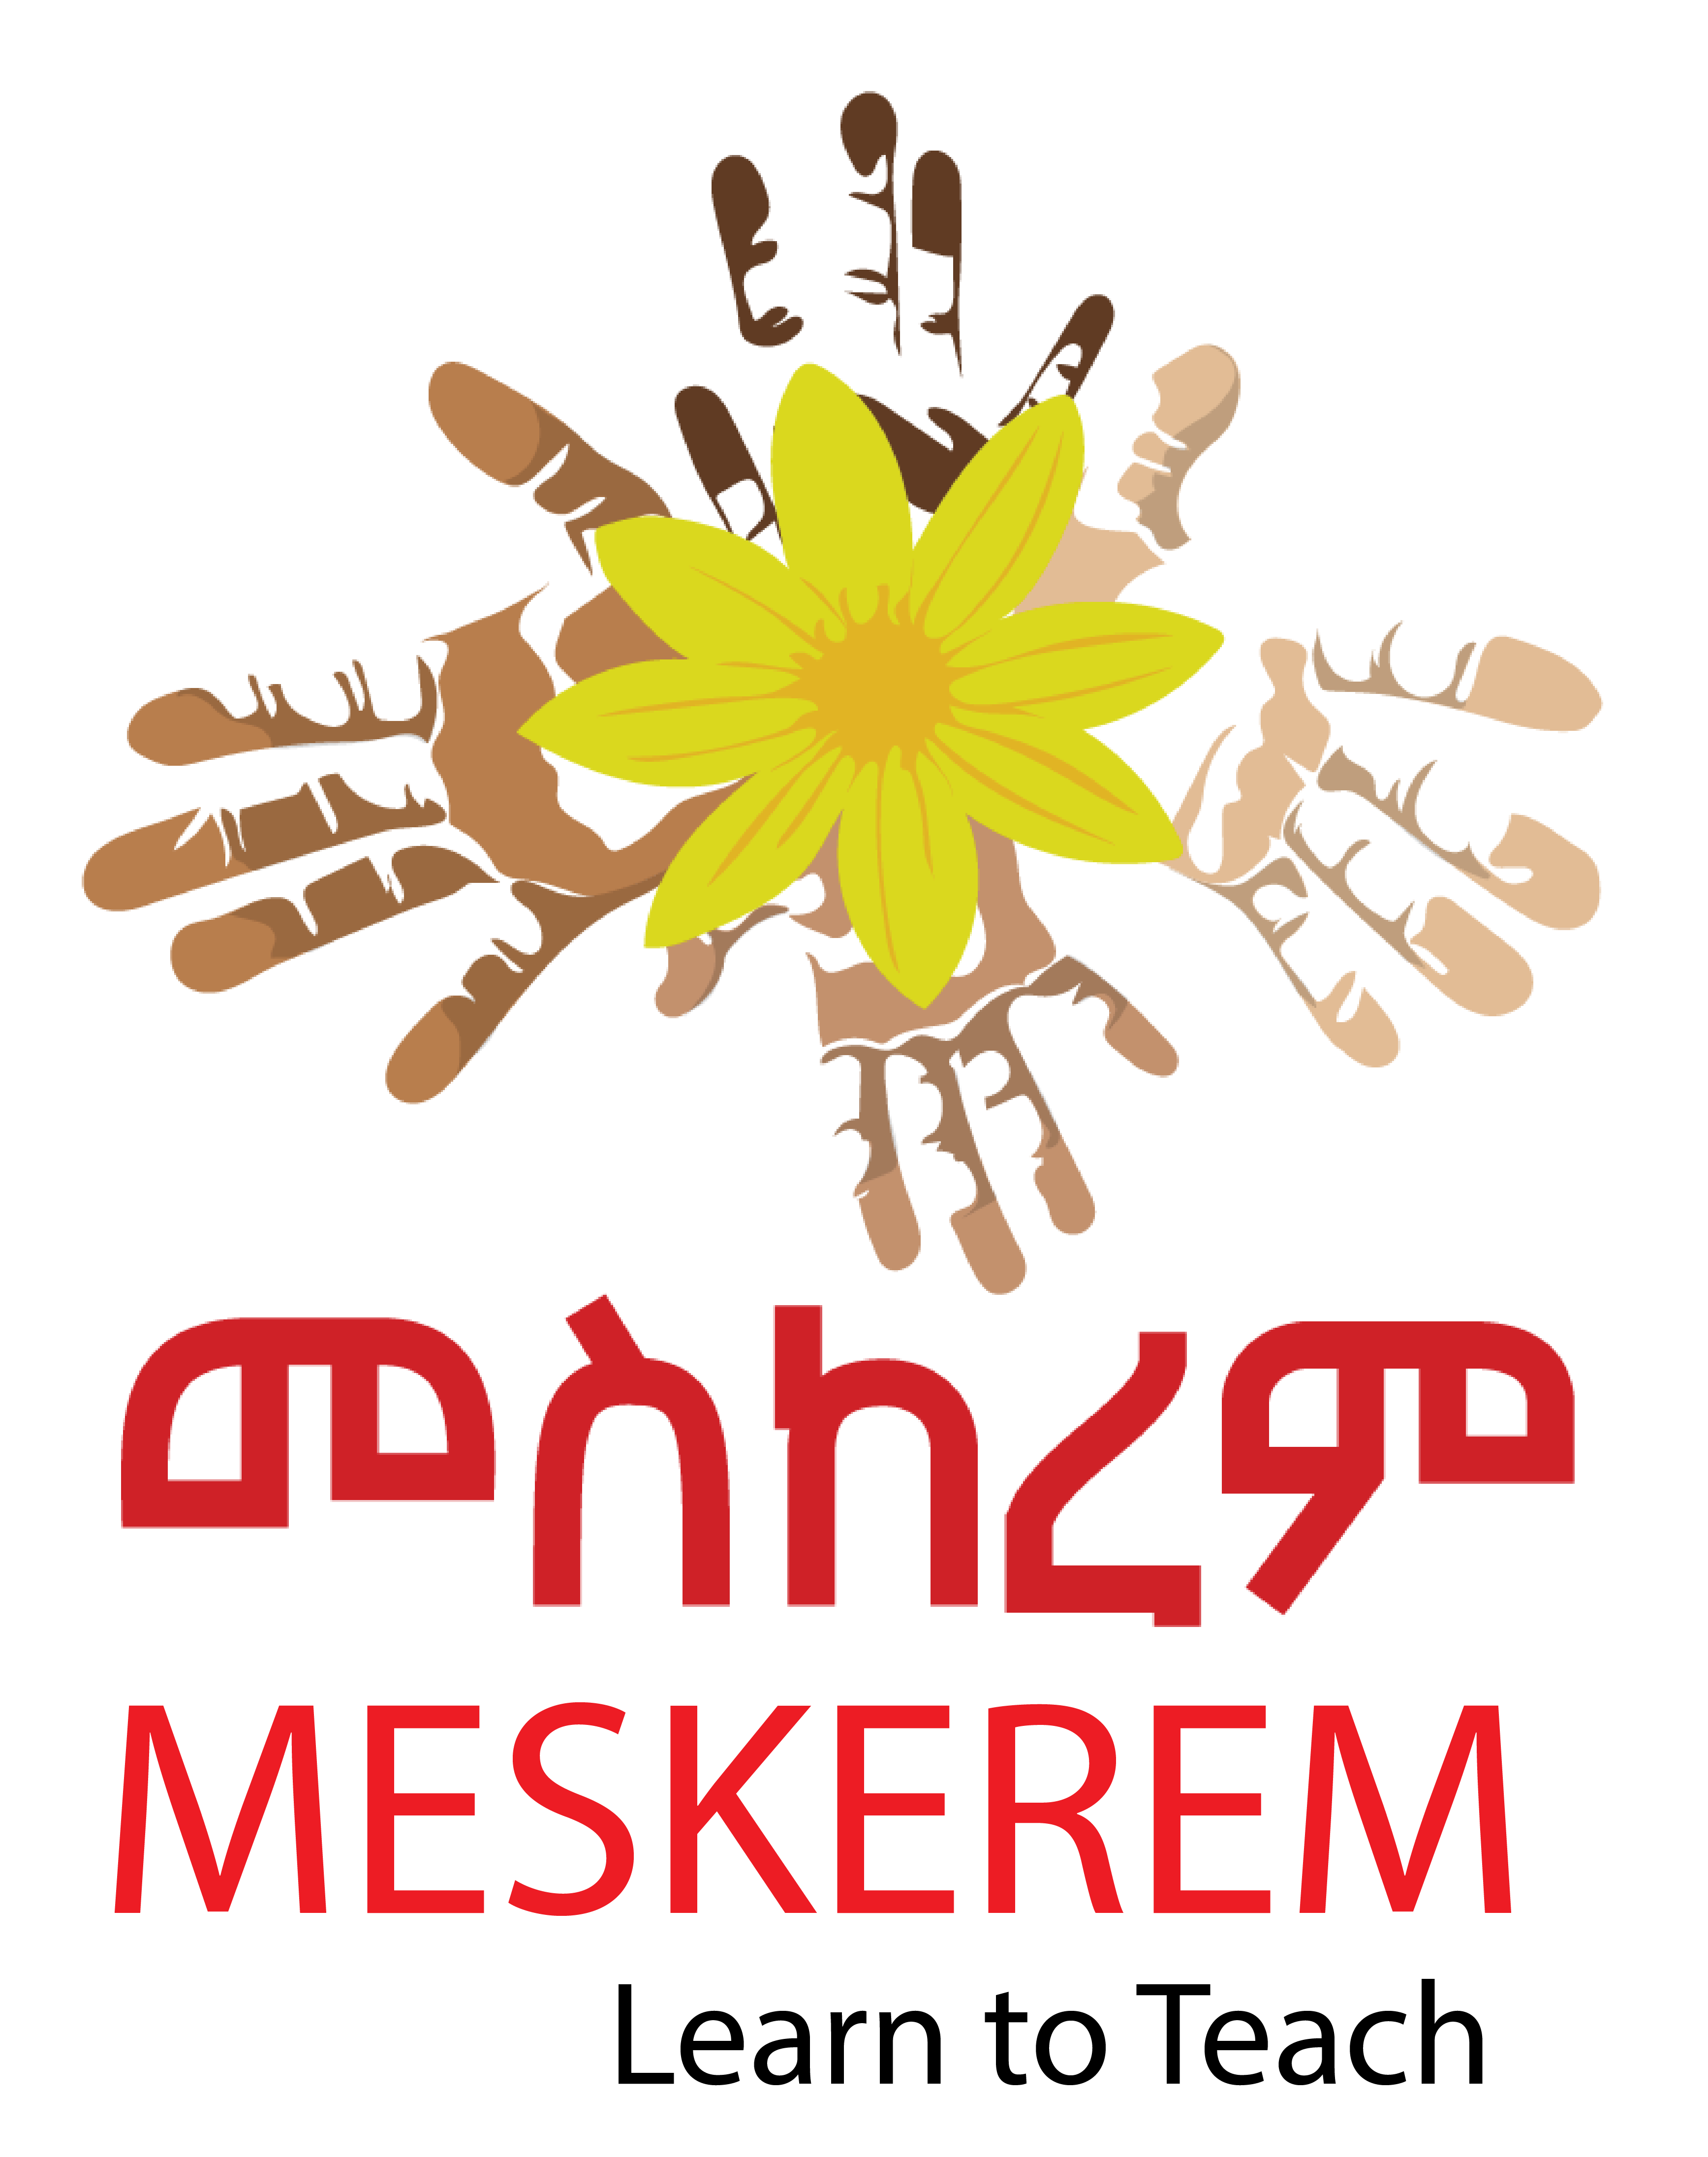 Meskerem logo